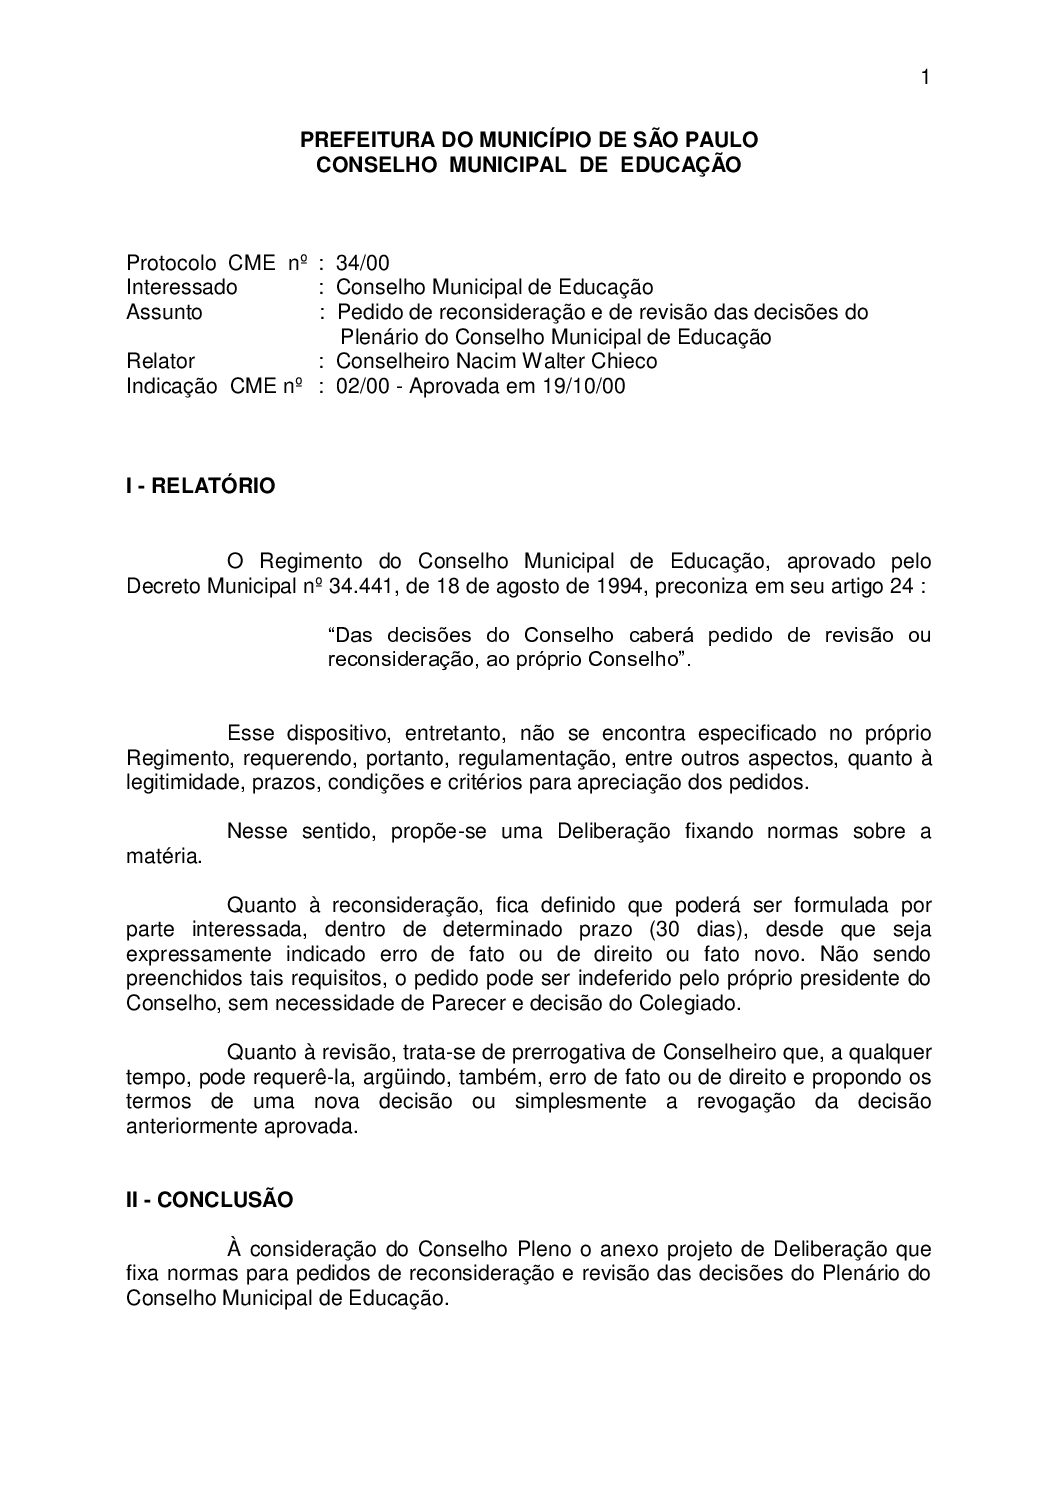 Indicação CME nº 02/2000 - Pedido de reconsideração e de revisão das decisões do Plenário do Conselho Municipal de Educação